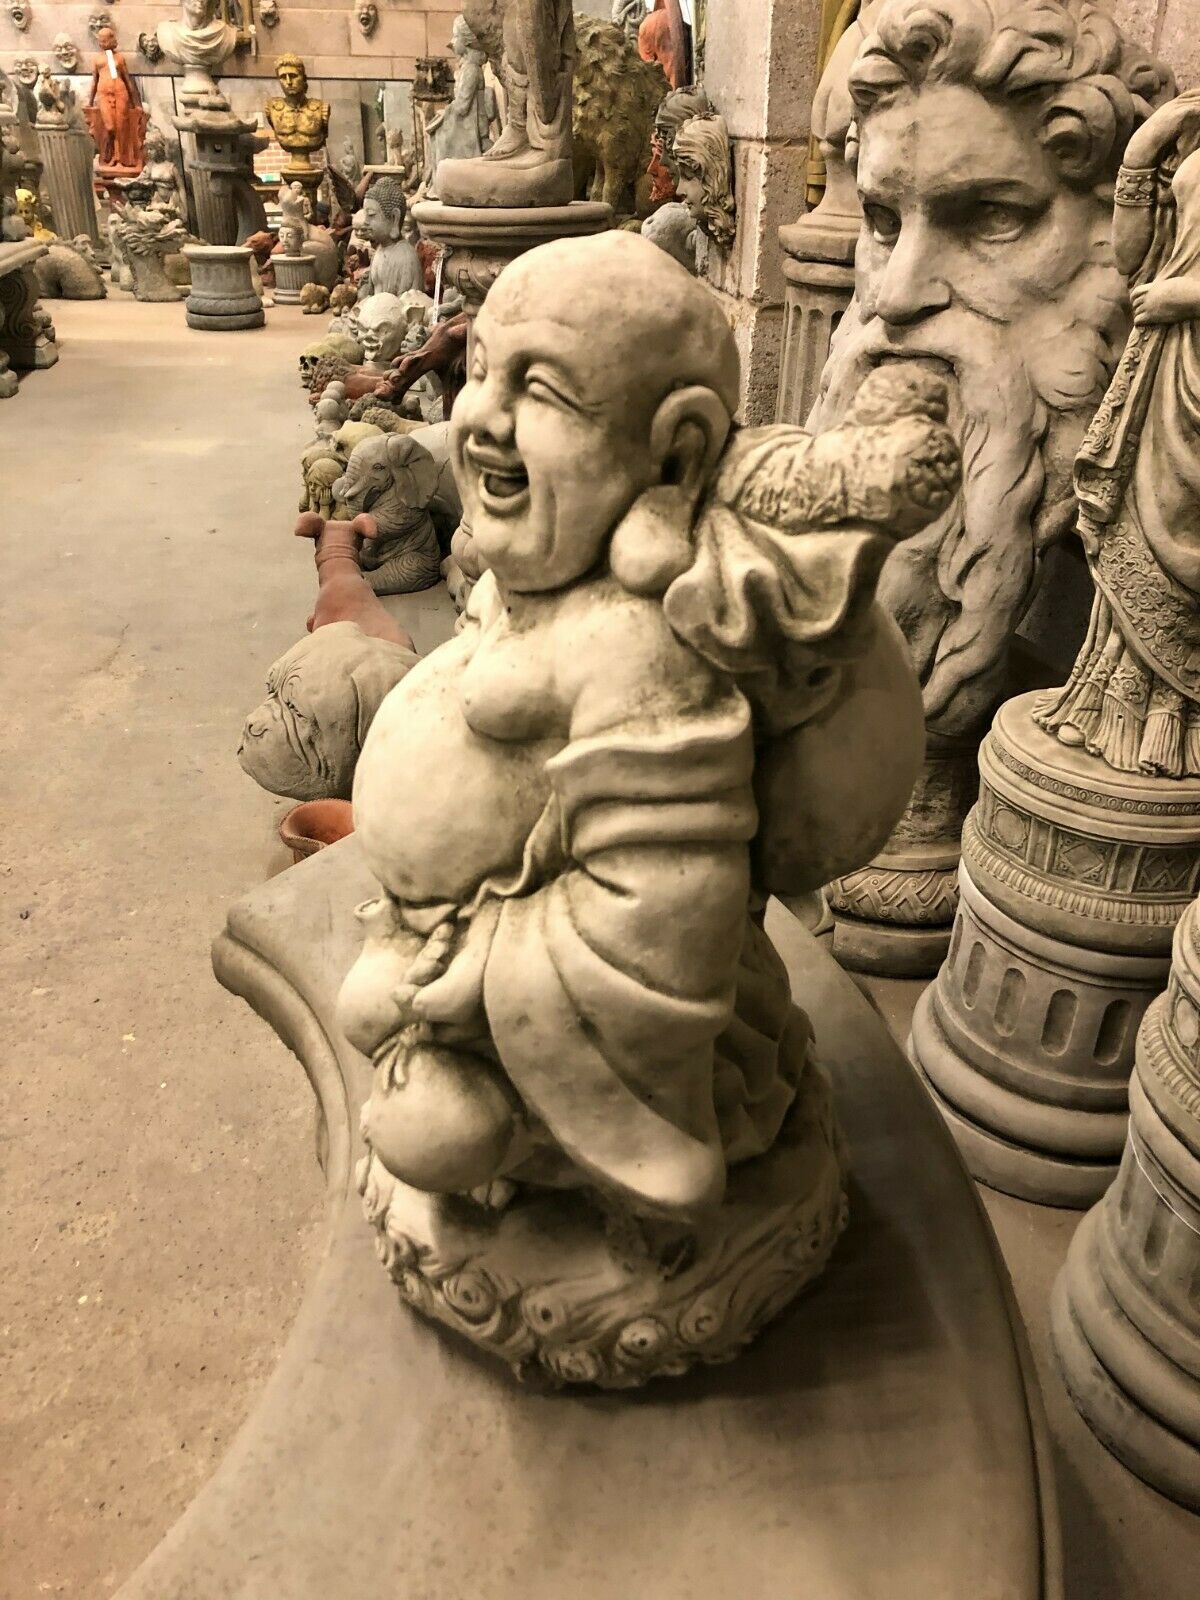 Stunning Stone Laughing Sack Buddha Garden Statue